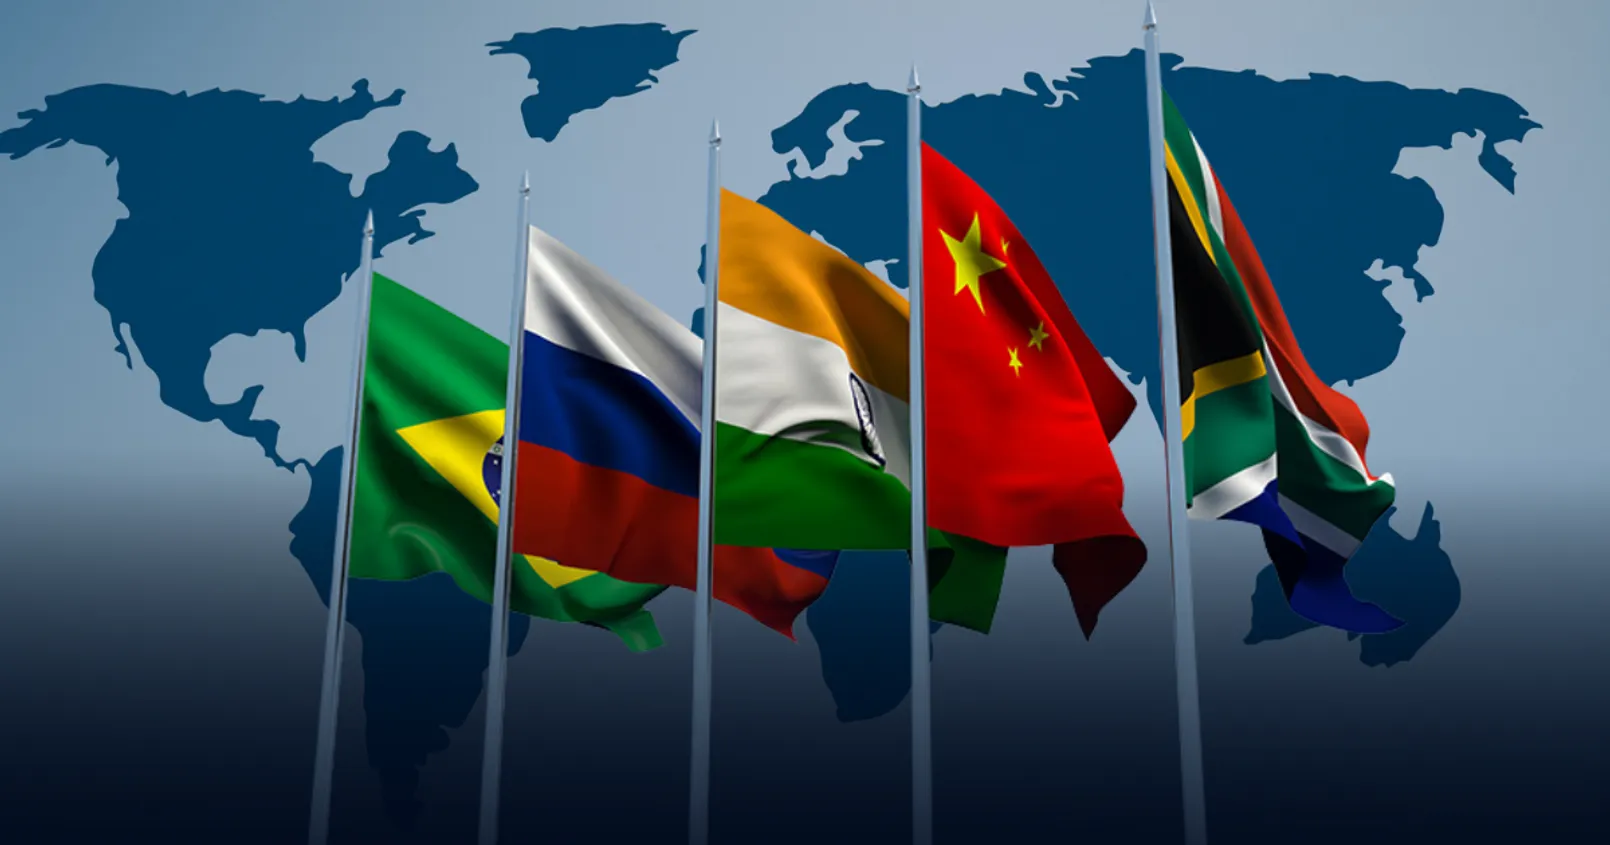 พบประเทศที่ต้องการเข้าร่วมพันธมิตร กับกลุ่มประเทศ BRICS เพิ่มมากขึ้น